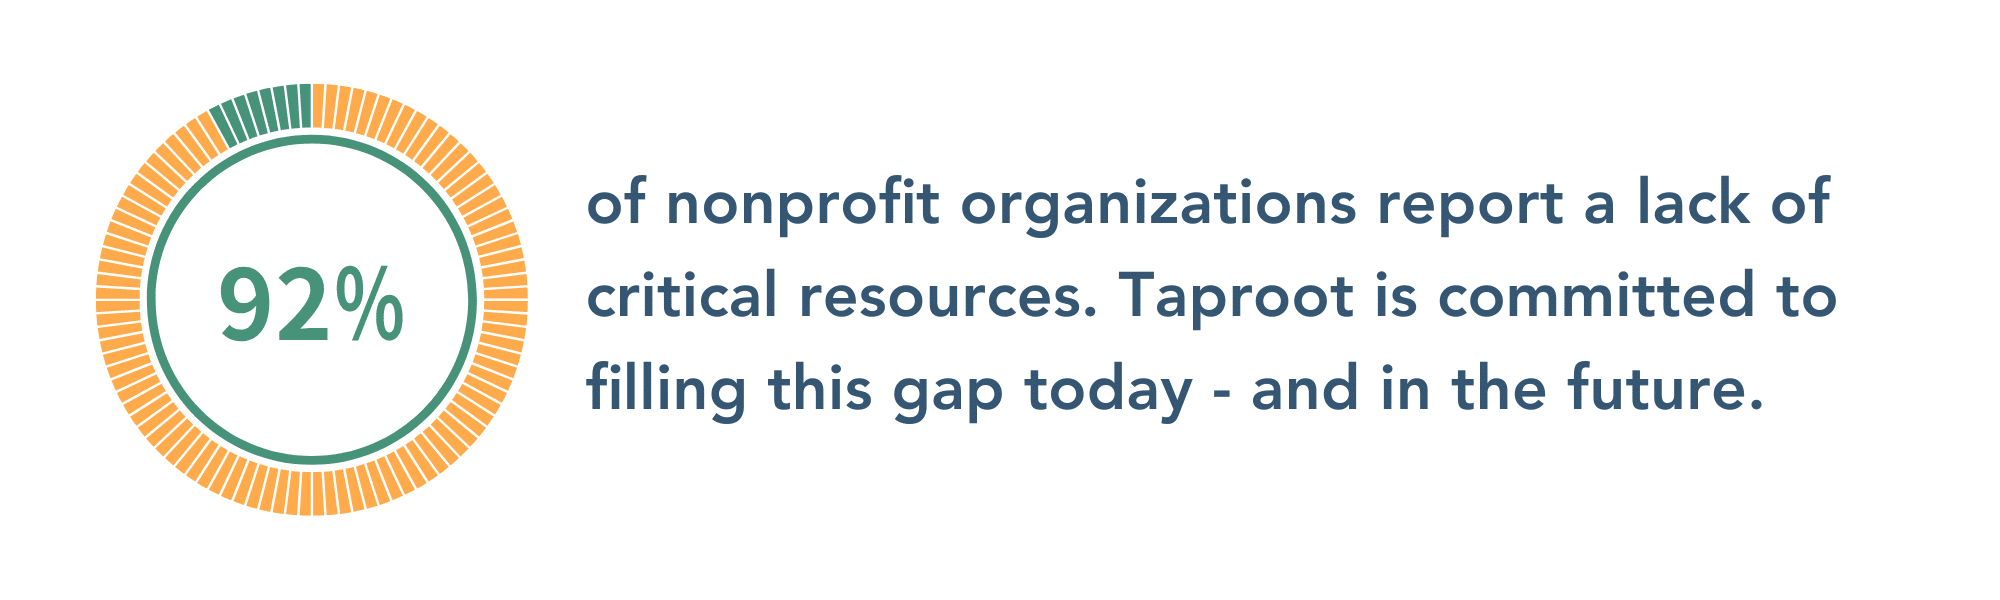 92 percent of nonprofits report a lack of critical resources